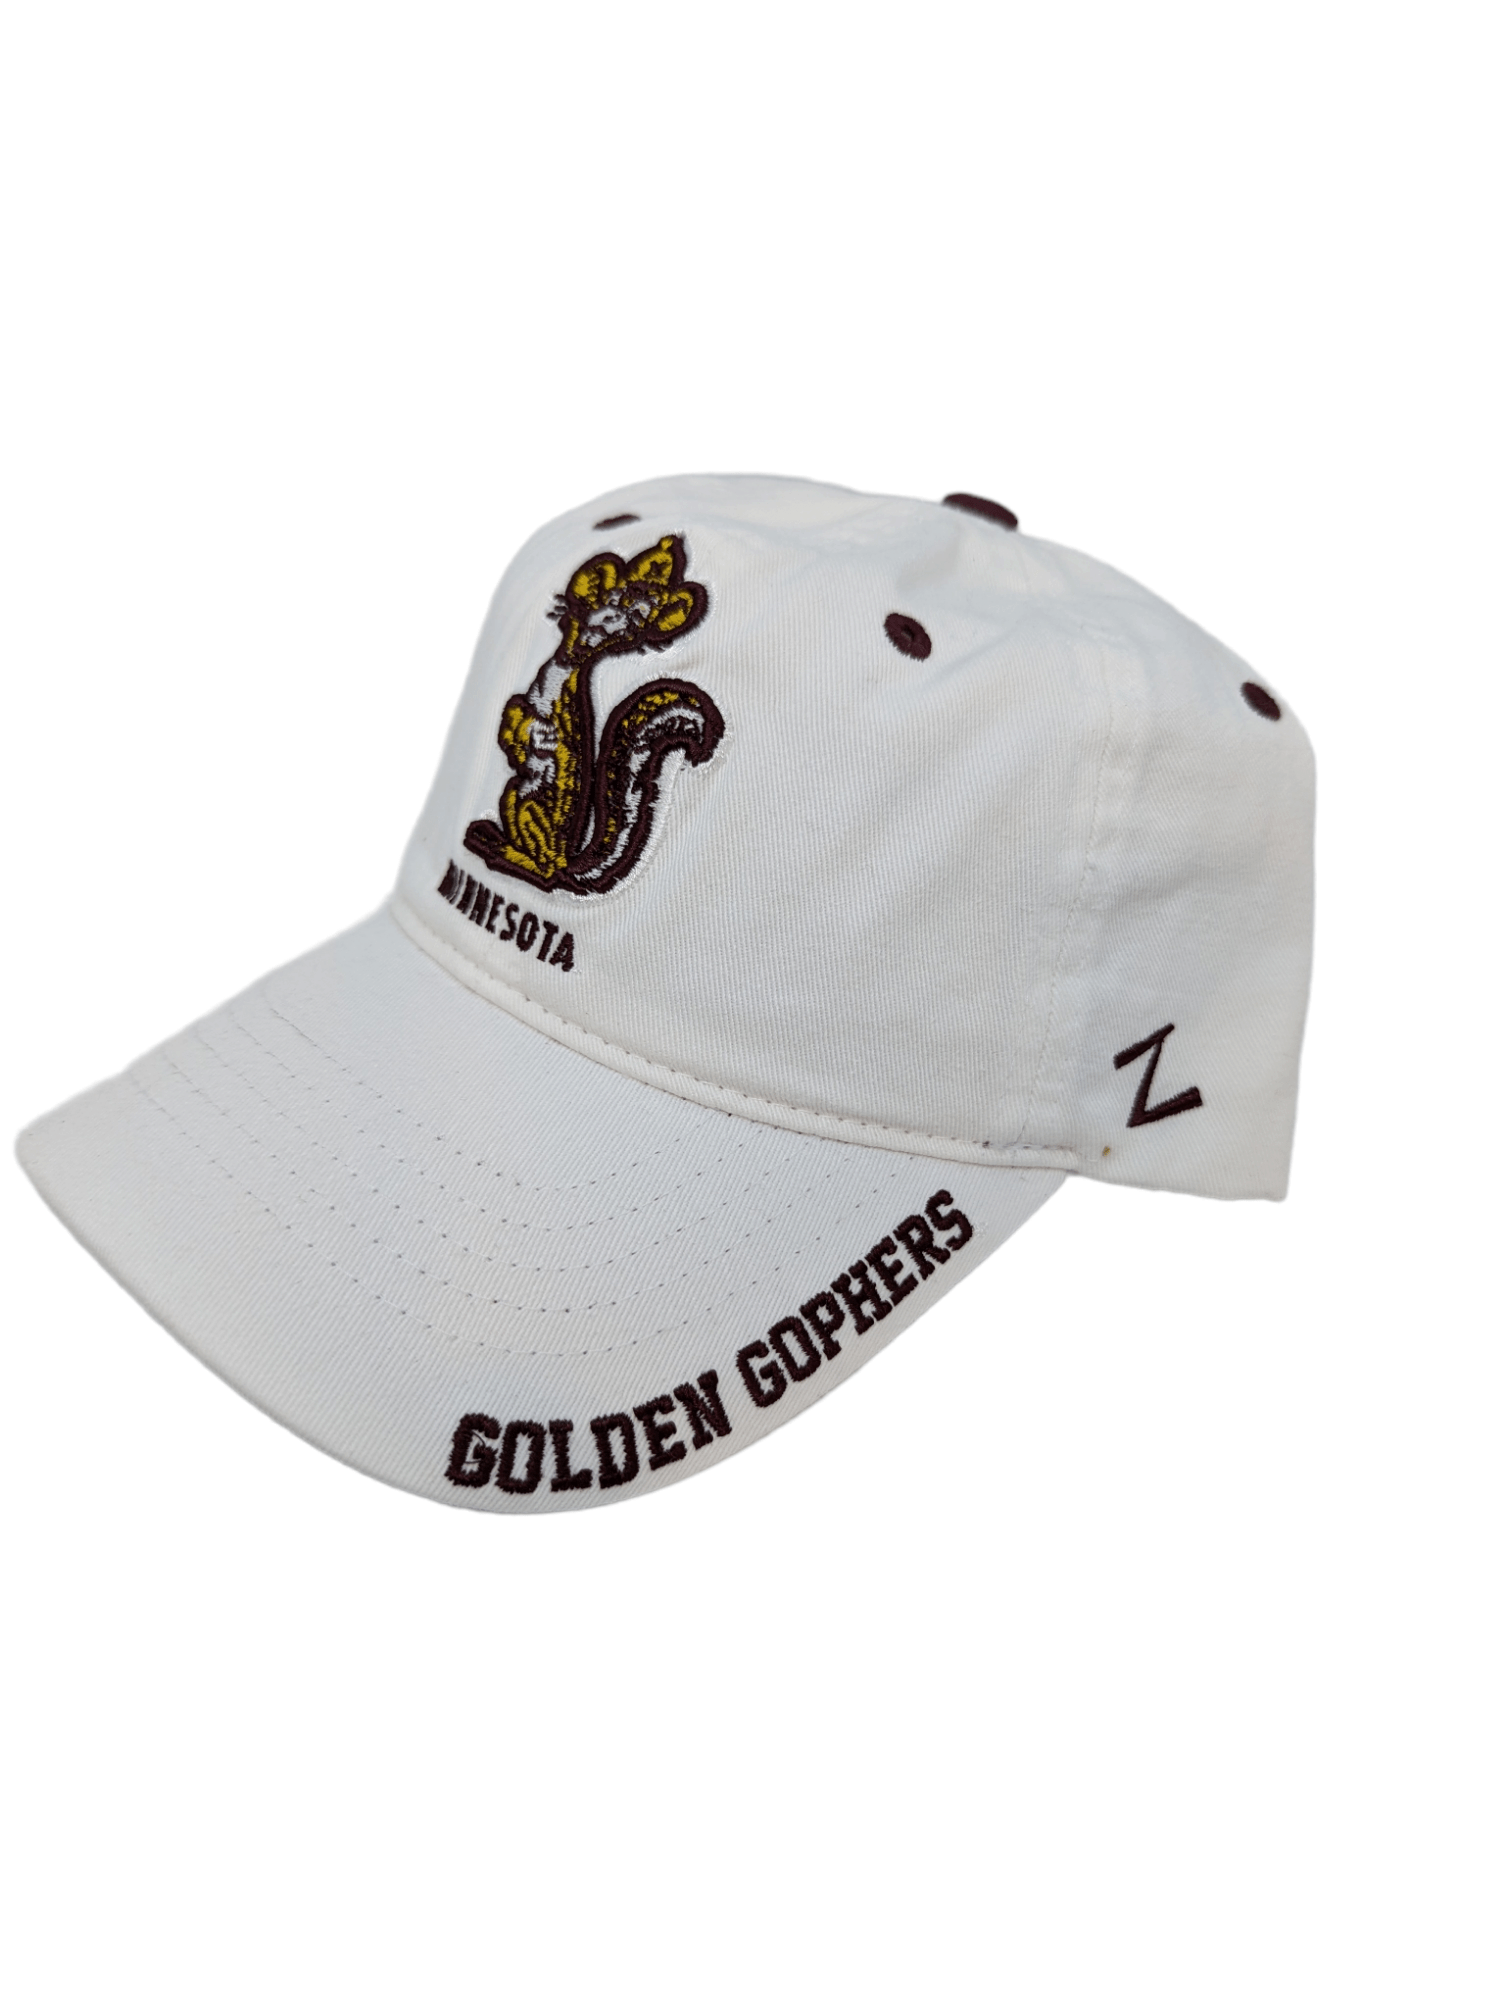 Zephyr Hats Minnesota Adjustable Vault Goldy Hat